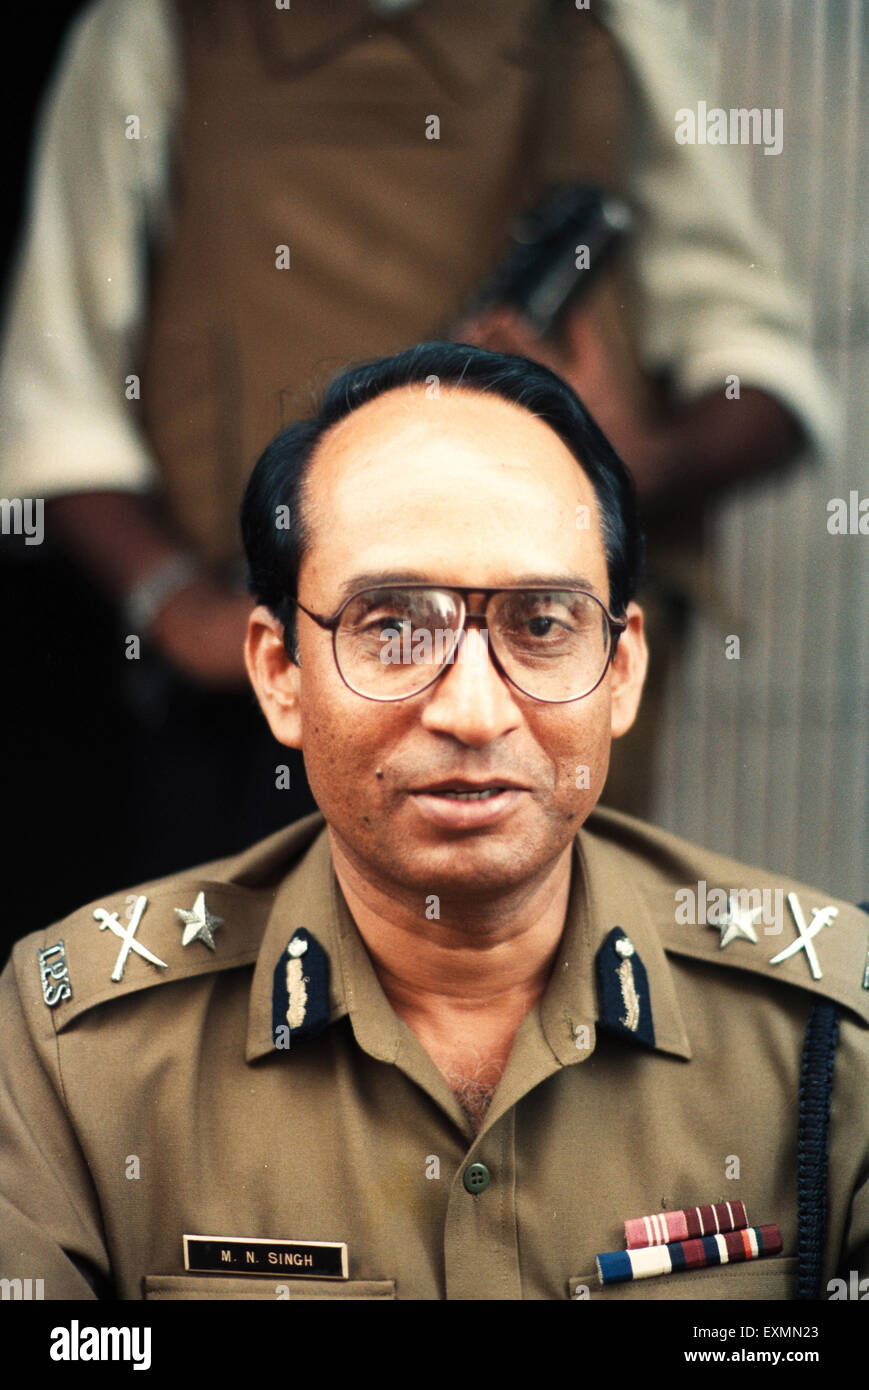 M N Singh Polizia mumbai india Foto Stock